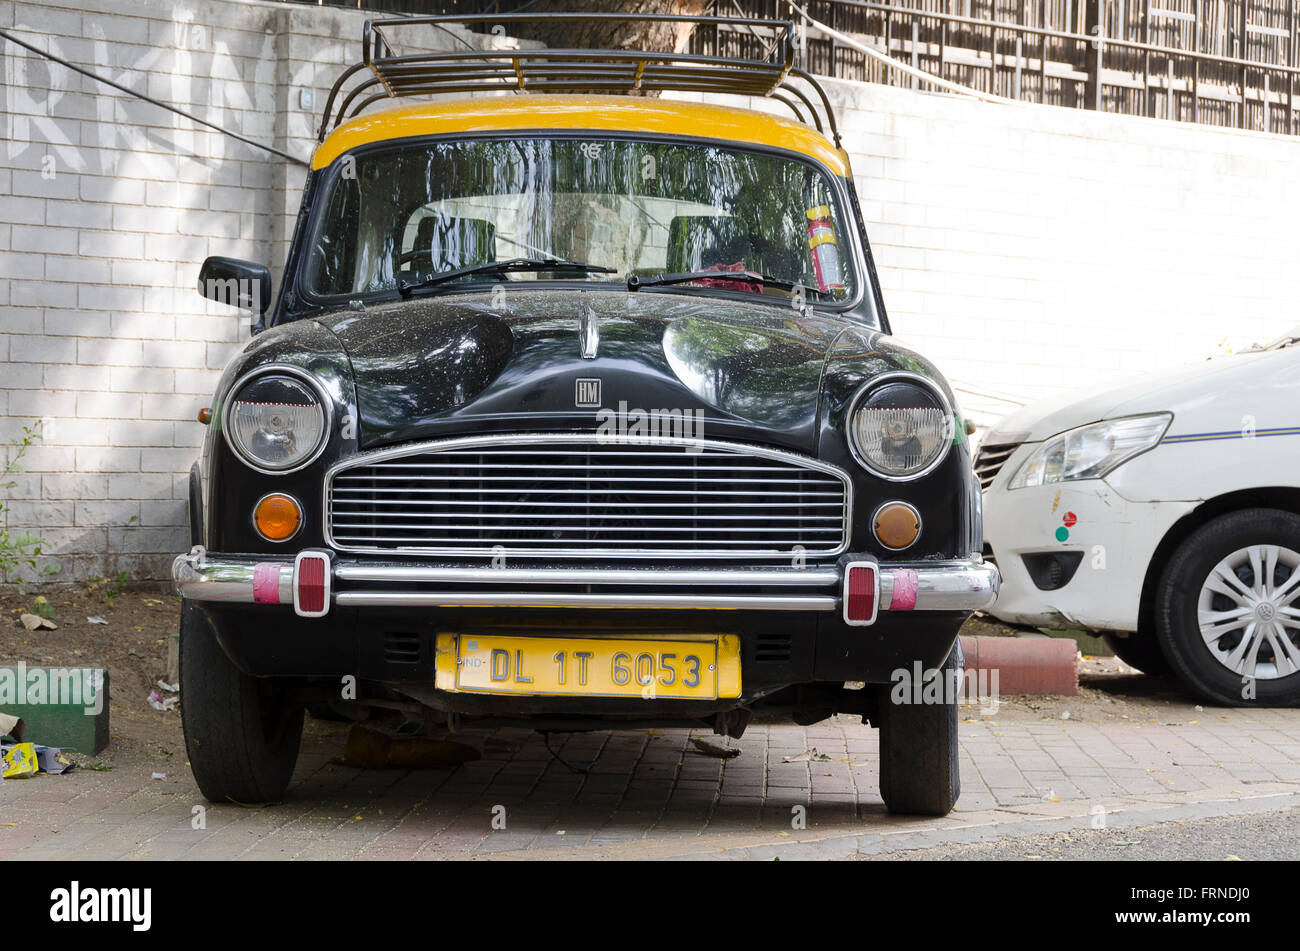 Hindustan Ambassador, Taxi, Delhi, India Stock Photo